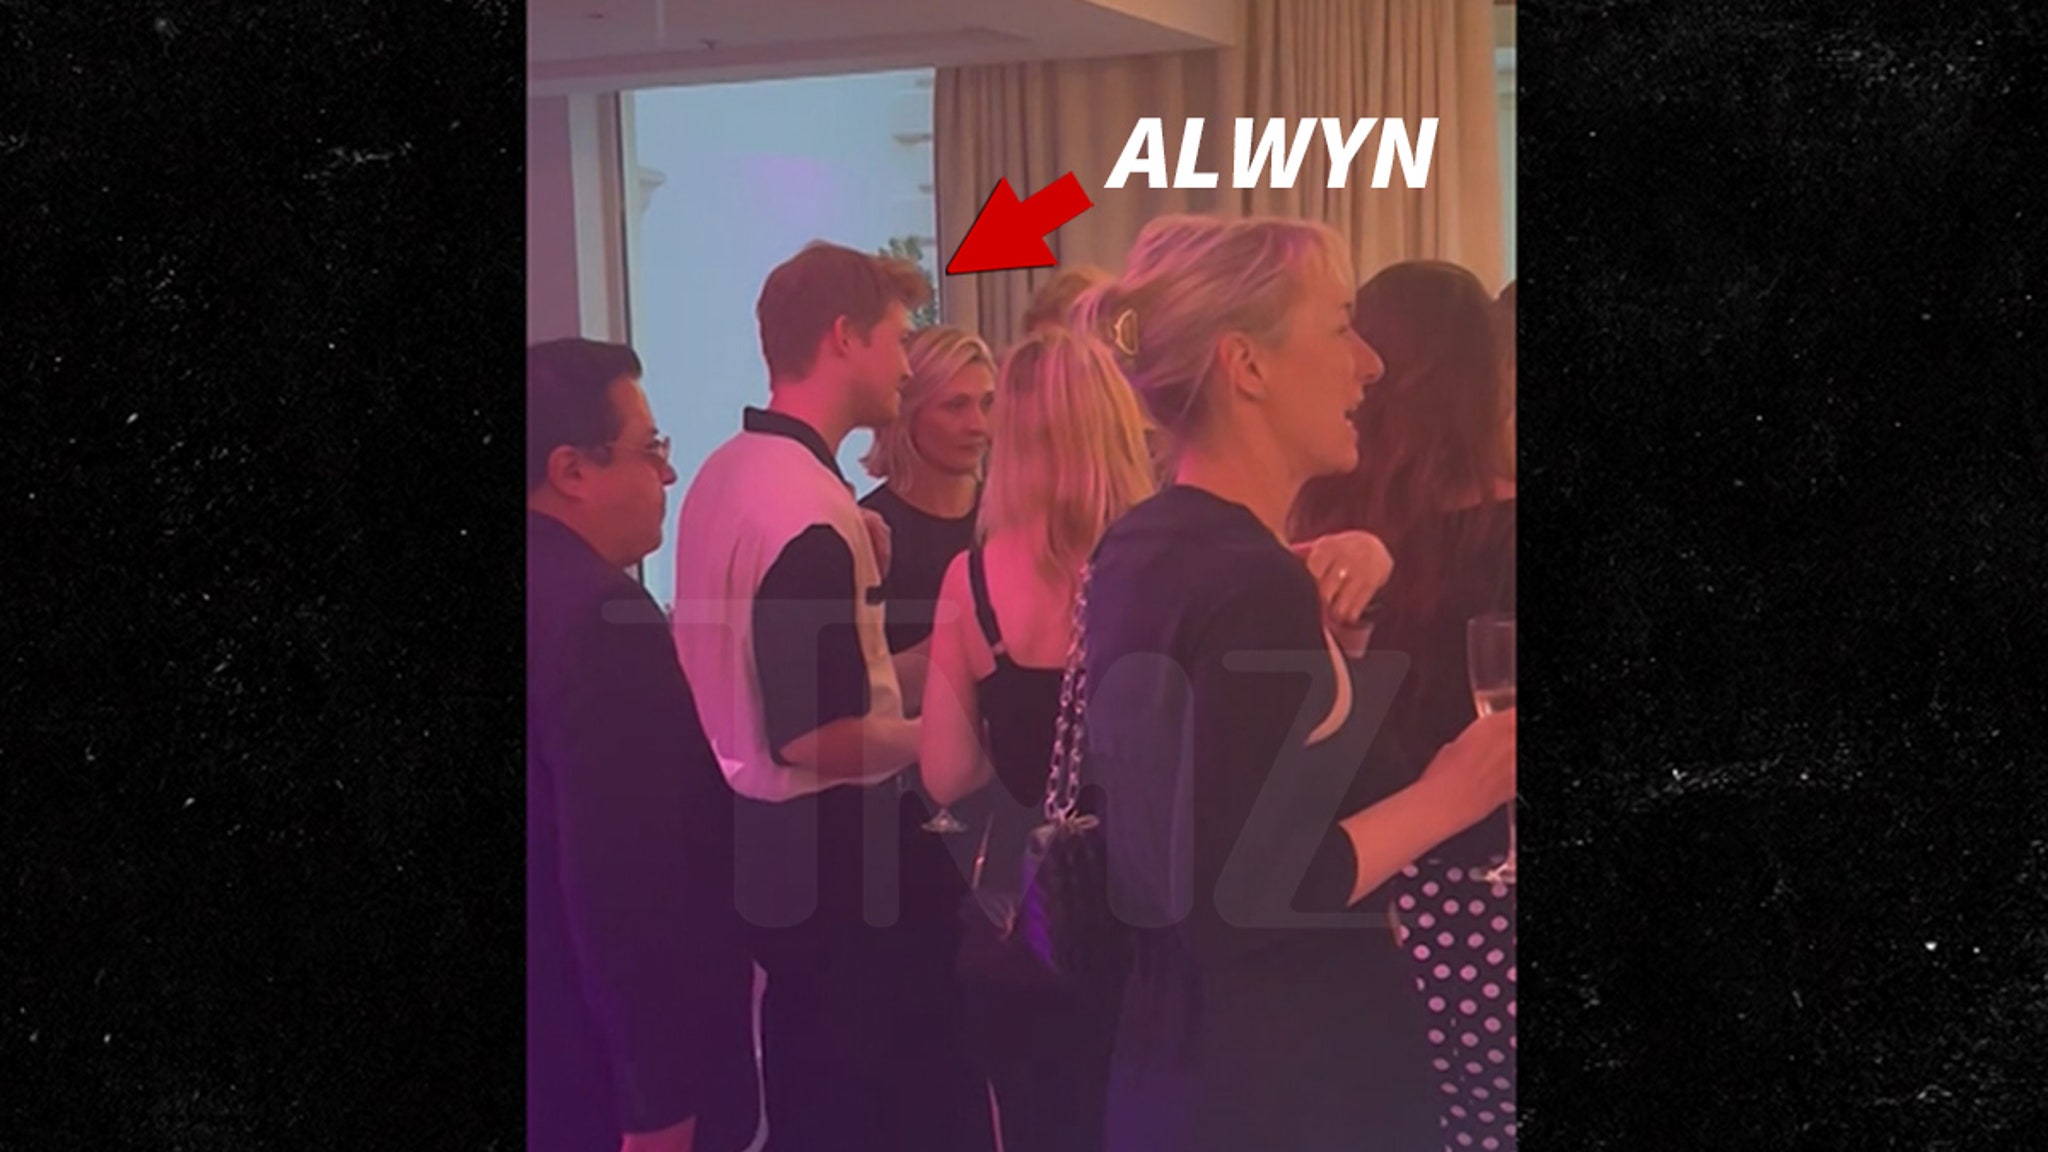 L’ex de Taylor Swift, Joe Alwyn, discute avec un groupe de blondes à Cannes